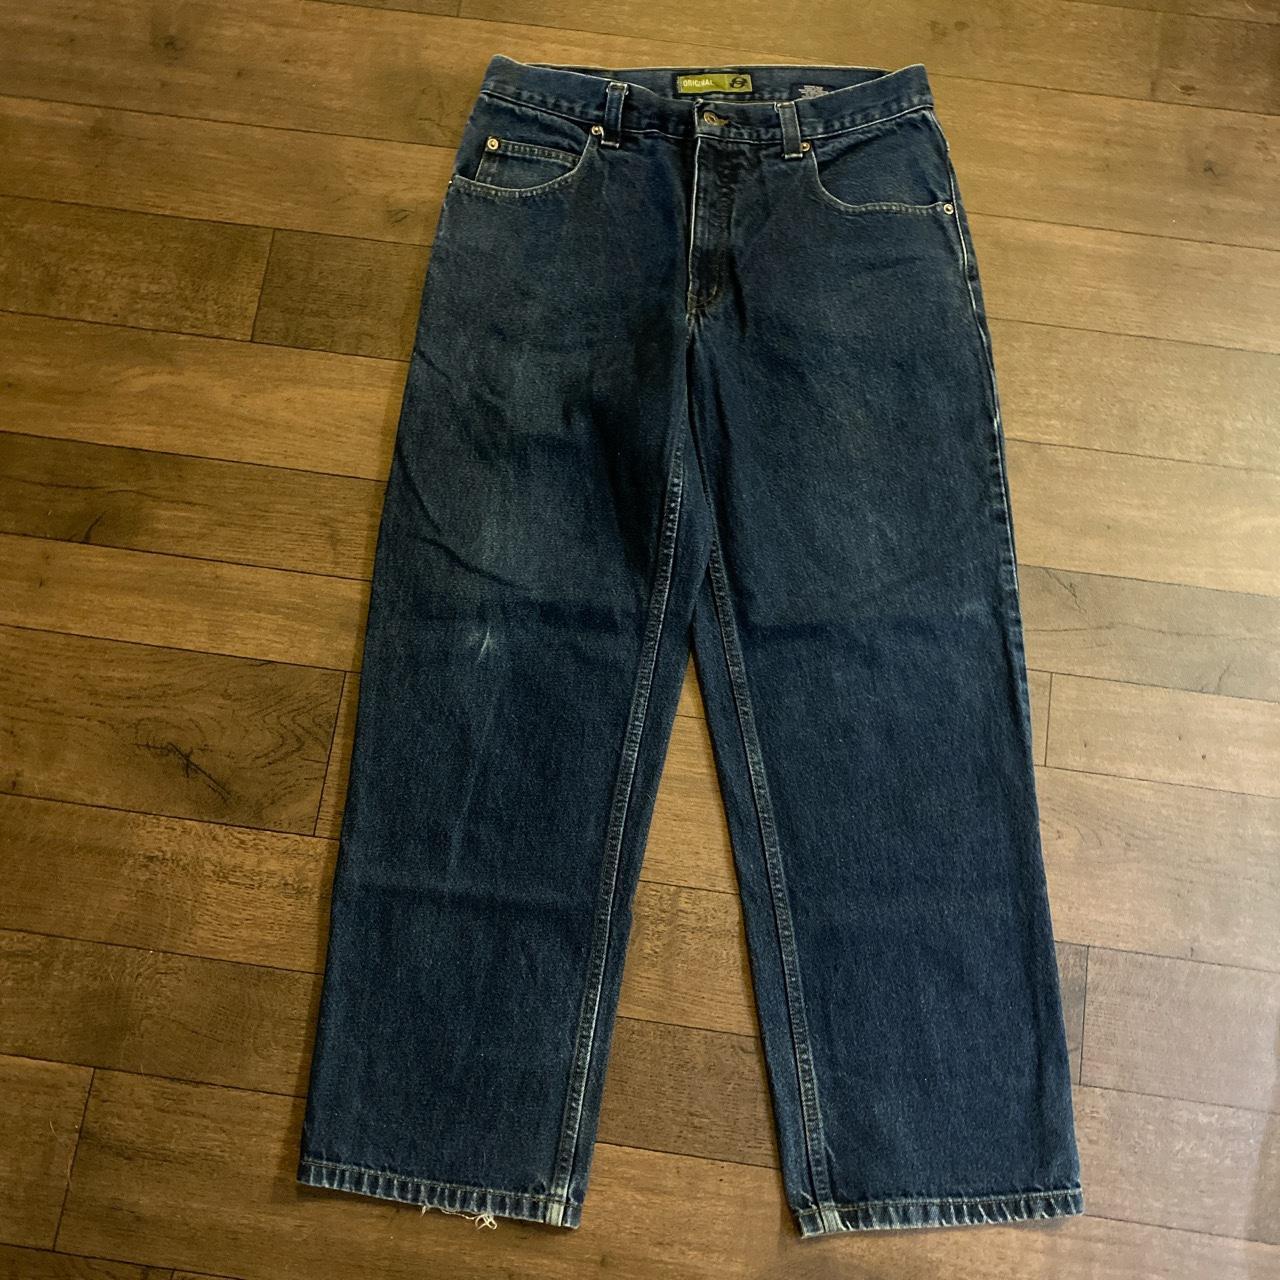 Anchor Blue Jeans original fit 32x30 9/10 condition... - Depop